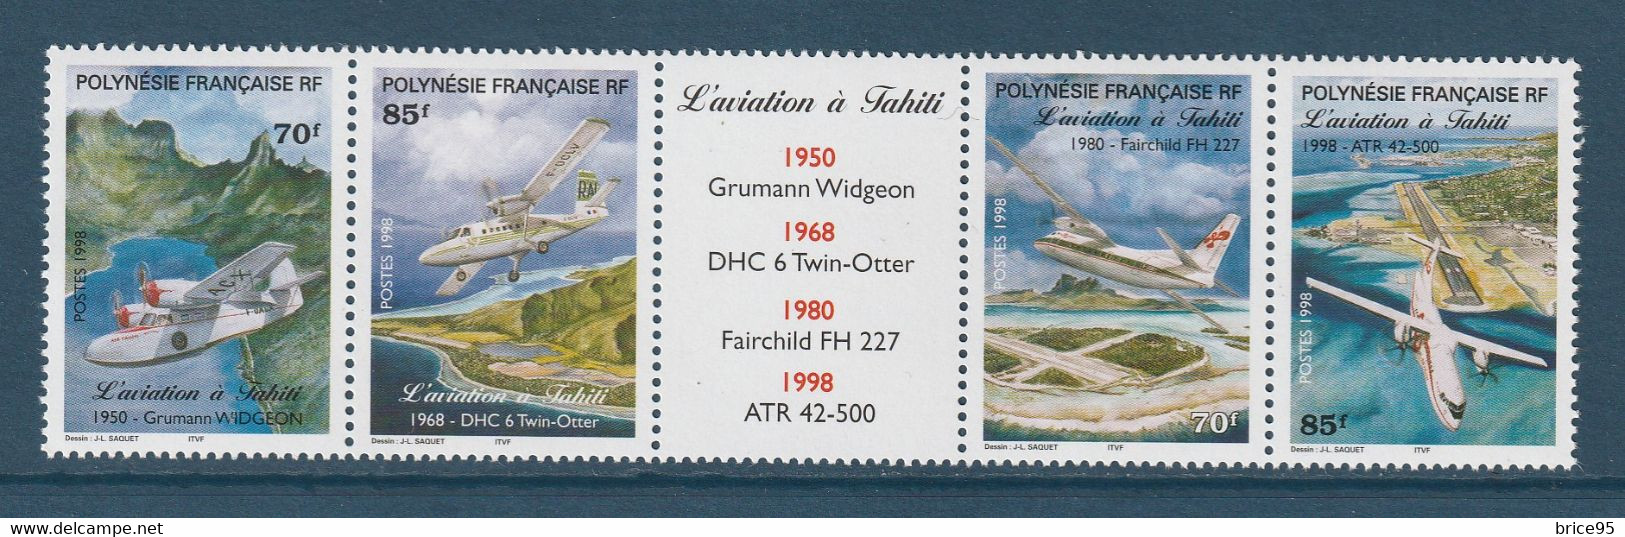 ⭐ Polynésie Française - YT N° 556 à 559 ** - Neuf Sans Charnière - 1998 ⭐ - Unused Stamps